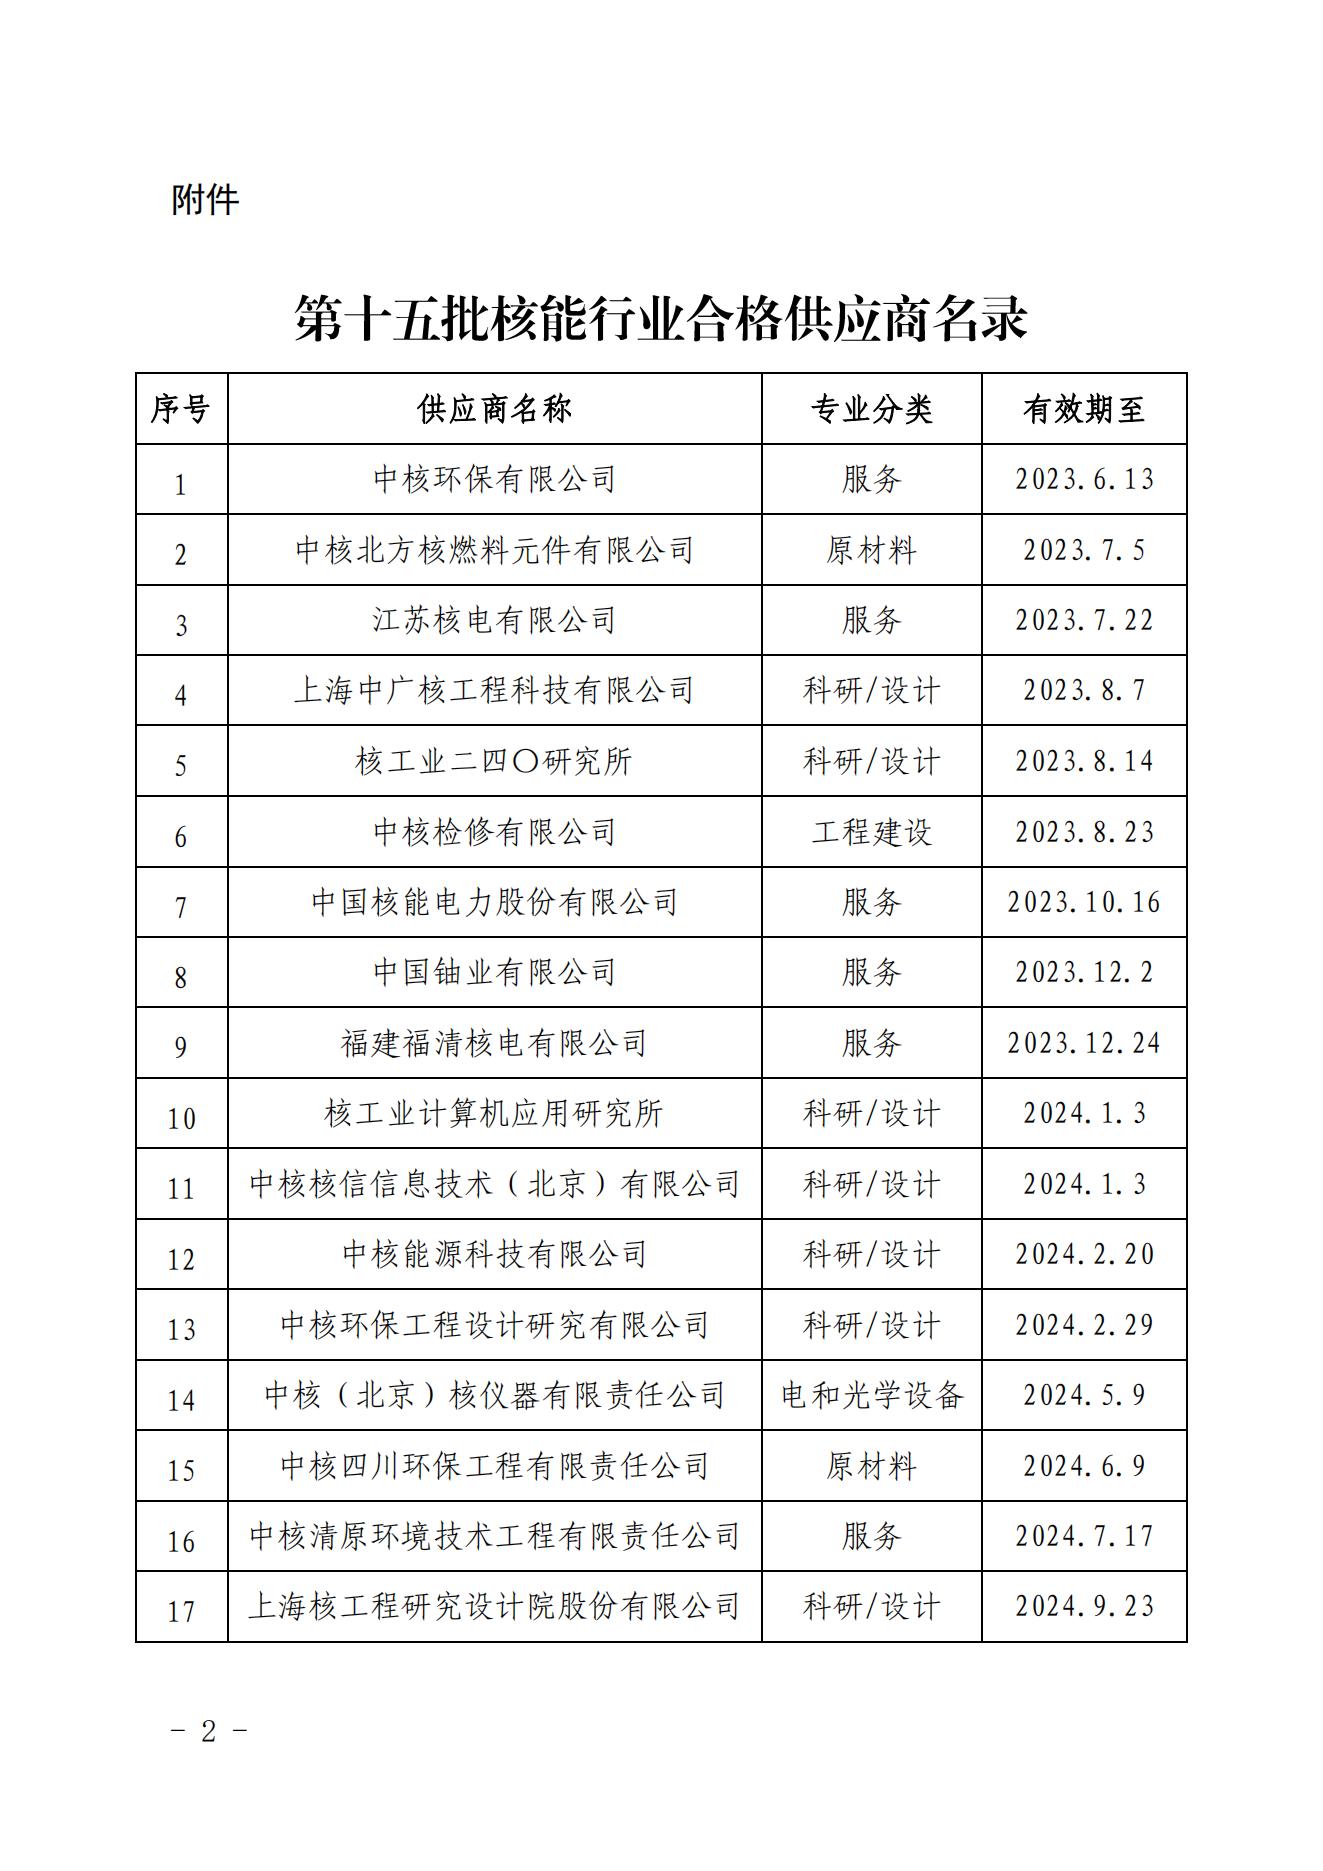 关于发布中国核能行业协会核能行业第十五批合格供应商名录的公告_01.jpg